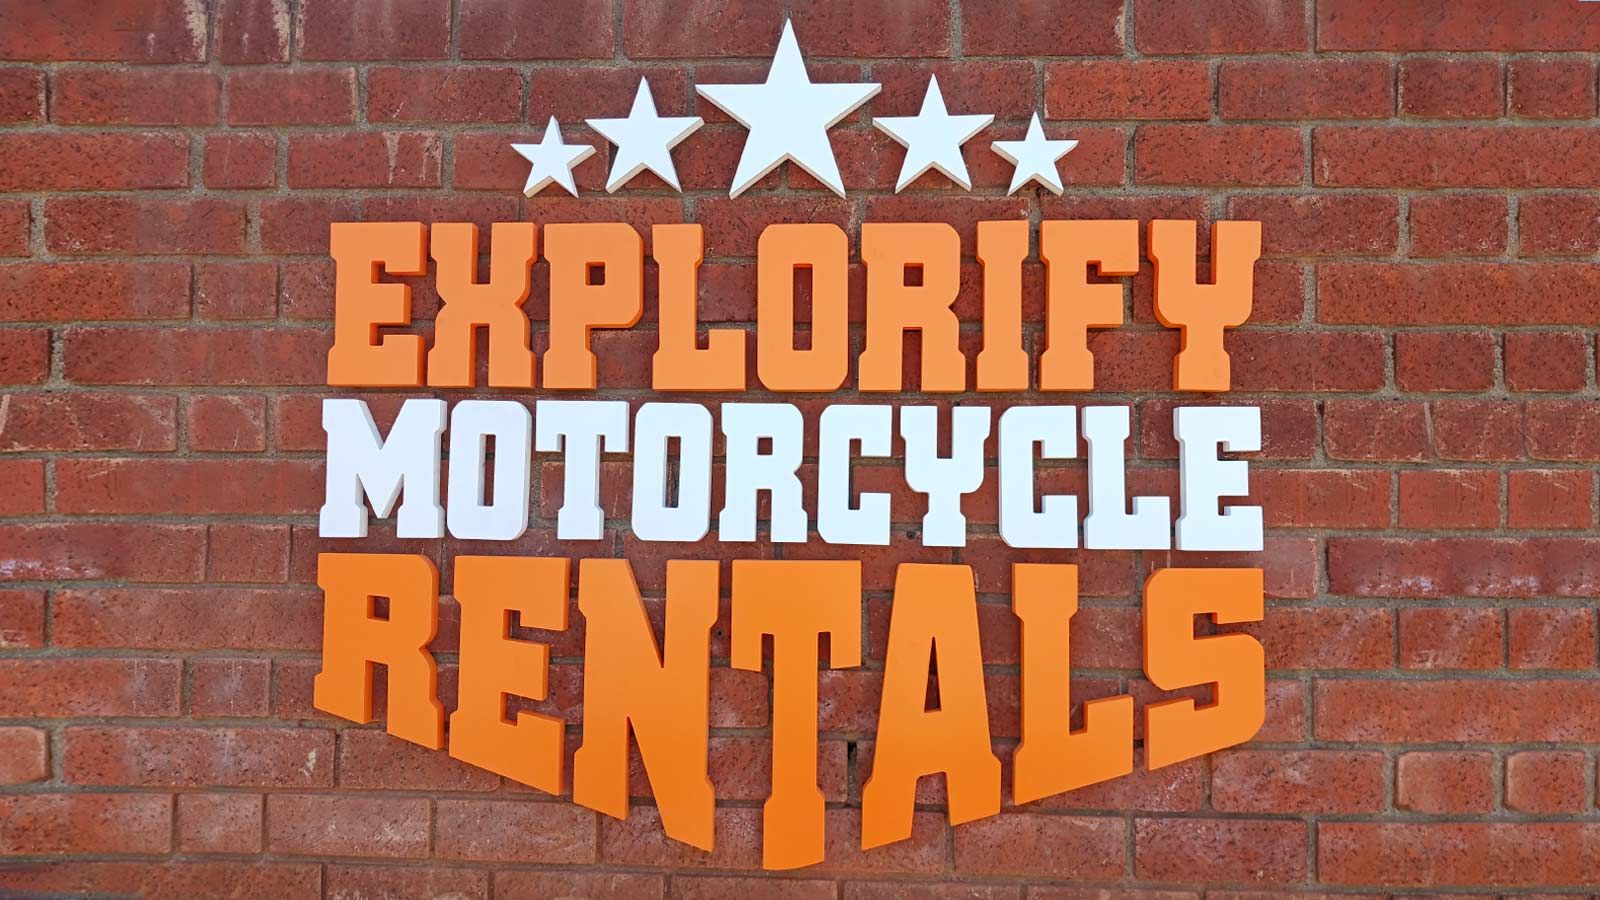 Explorify Motorcycle Rentals 3D pvc letters